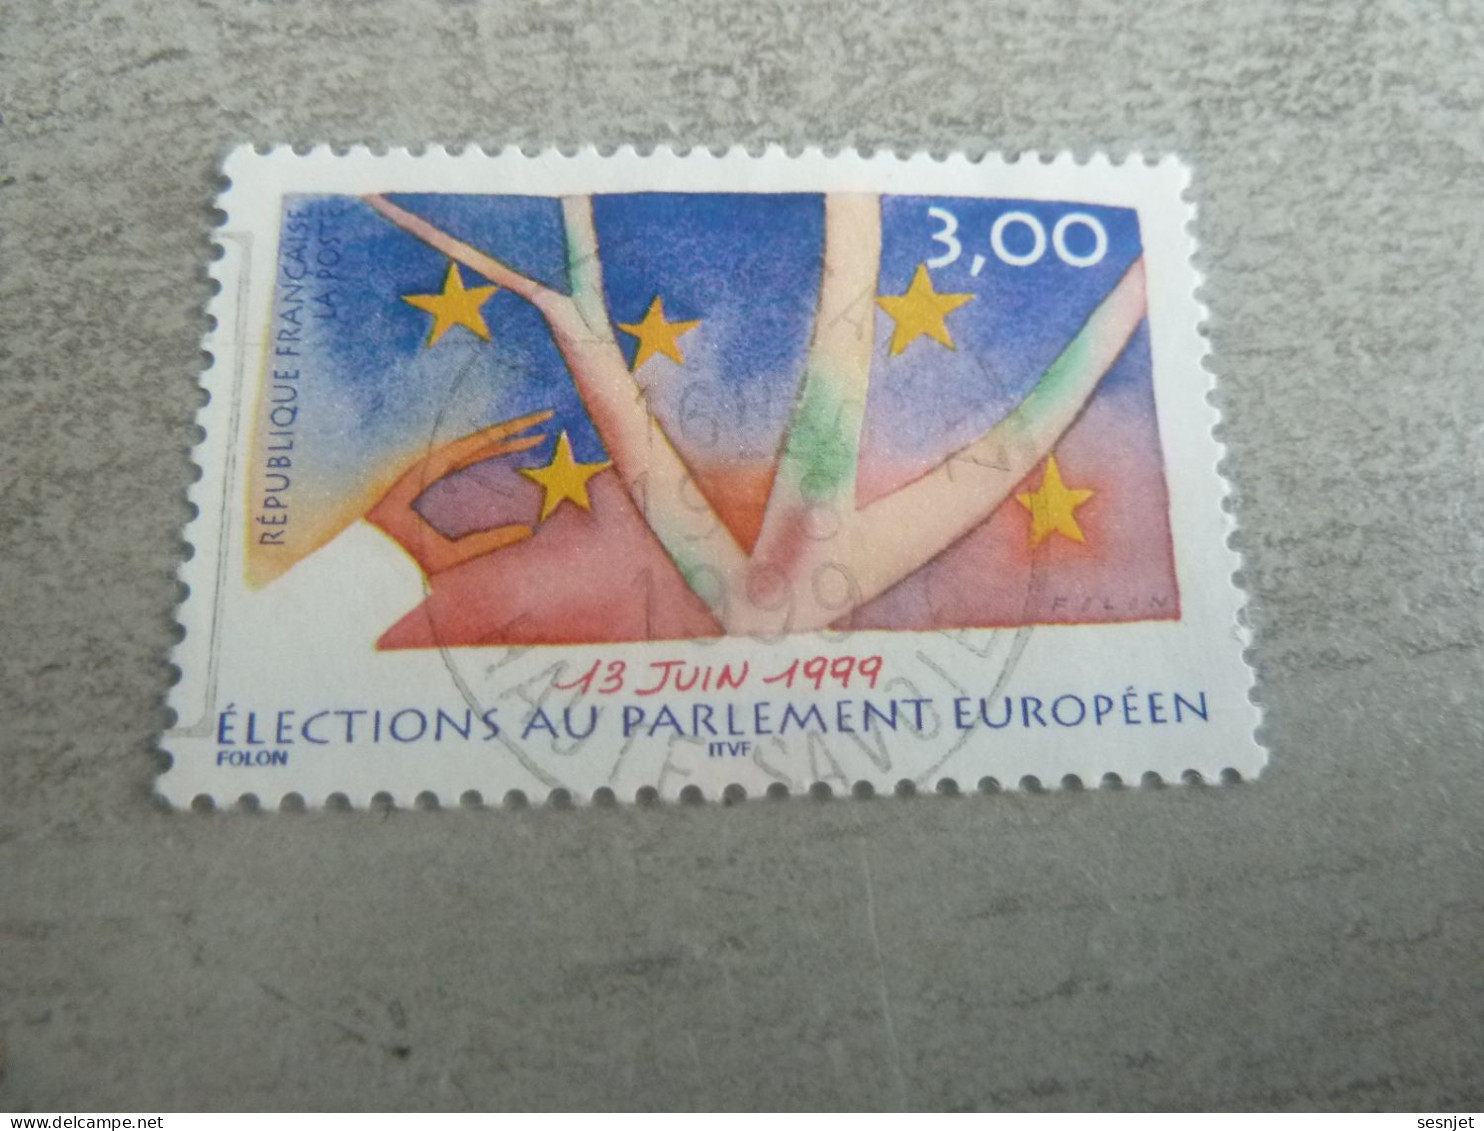 Elections Au Parlement Européen - 3f. - Yt 3237 - Multicolore - Oblitéré - Année 1999 - - Usados